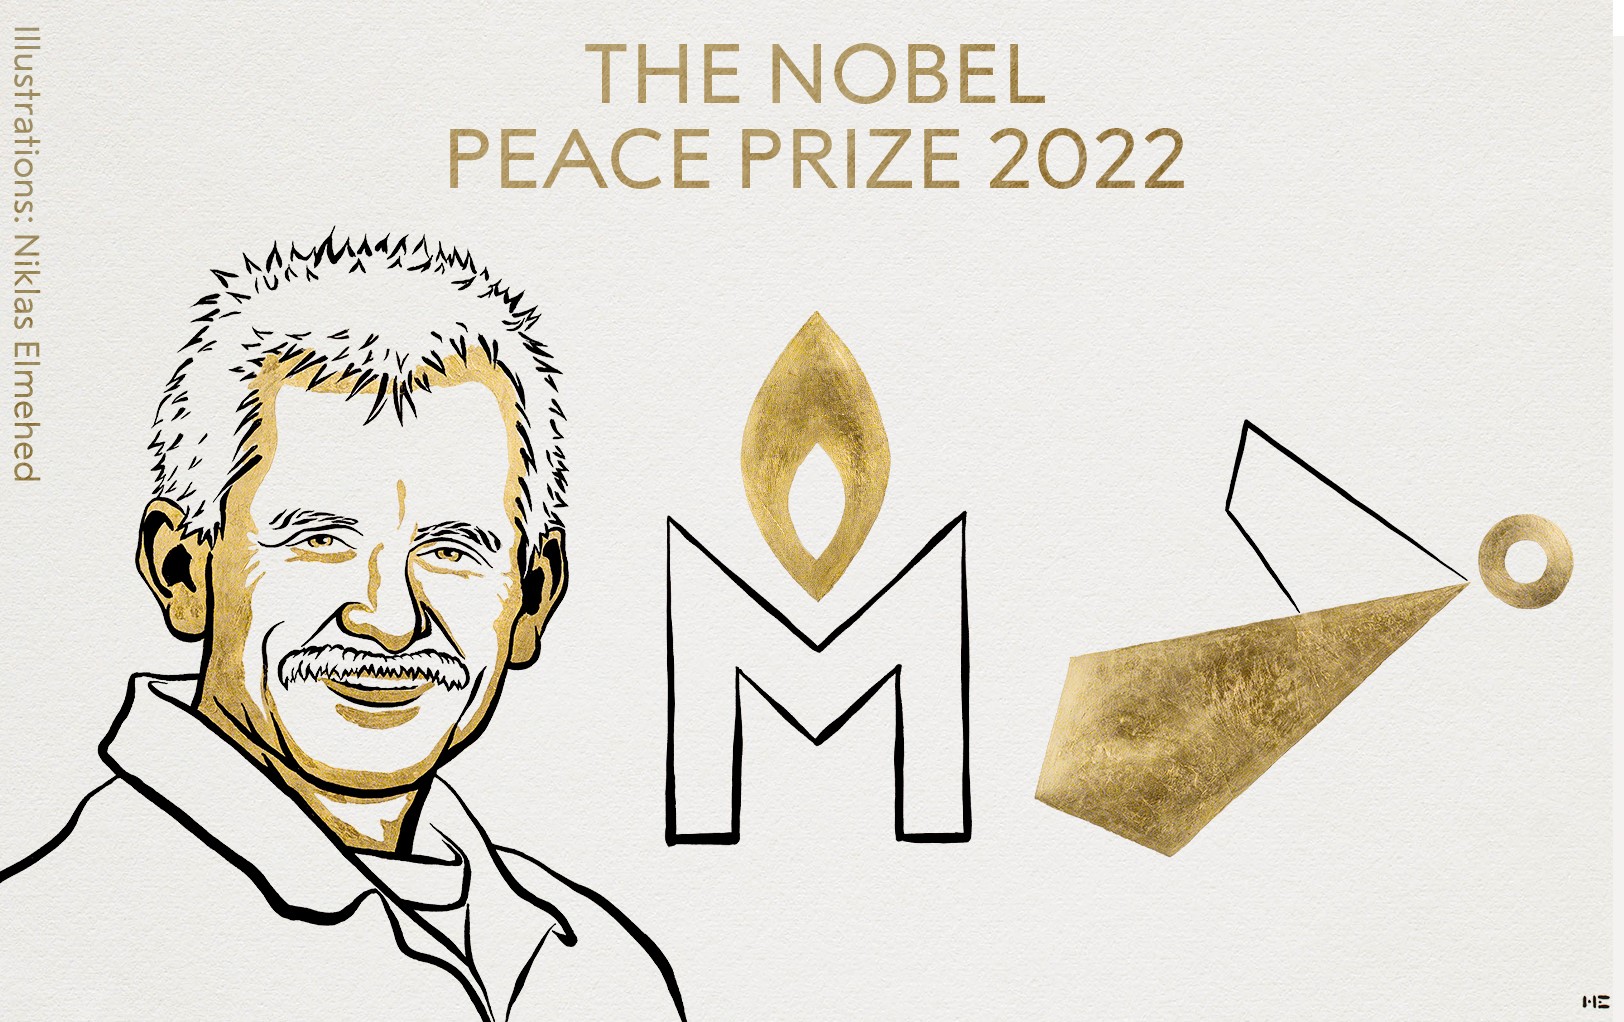 Representantes de las tres iniciativas galardonadas con el Nobel de la Paz 2022 visitan Barcelona y Madrid